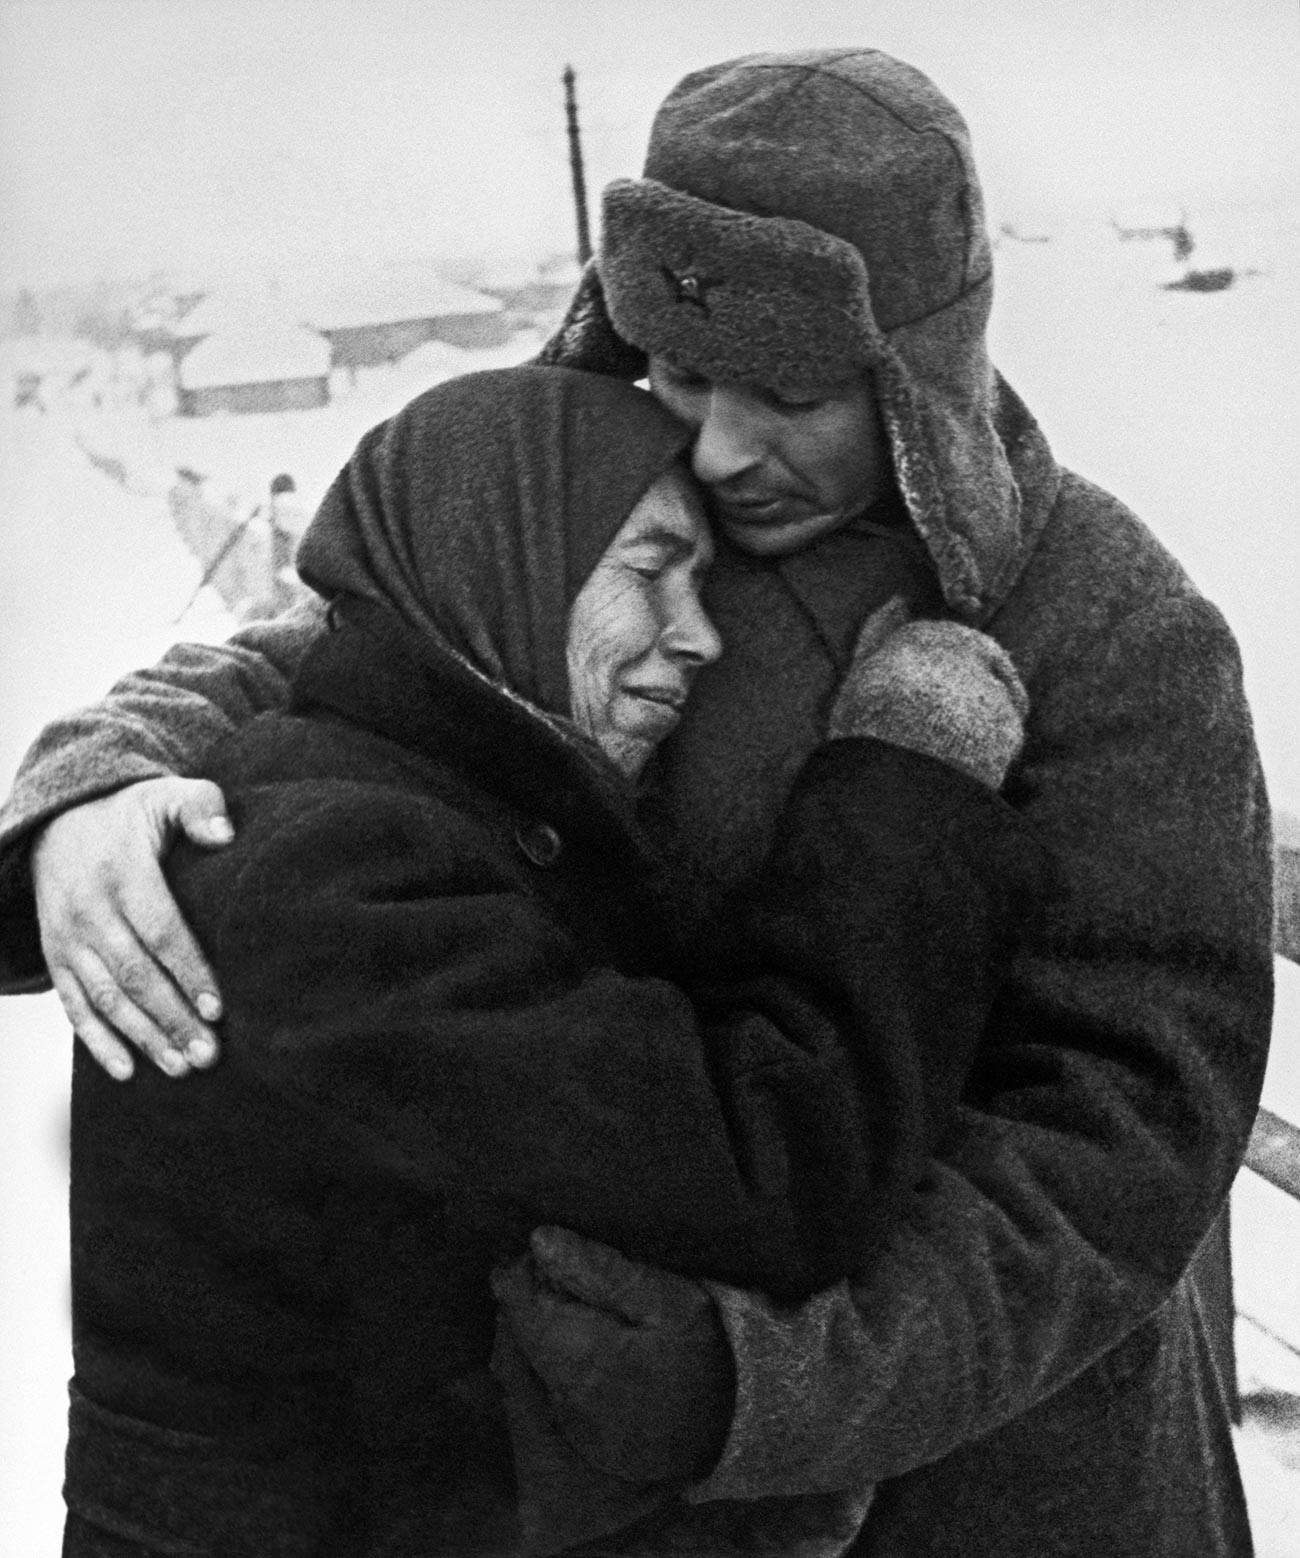 Mulher abraçando um soldado soviético em uma aldeia libertada
